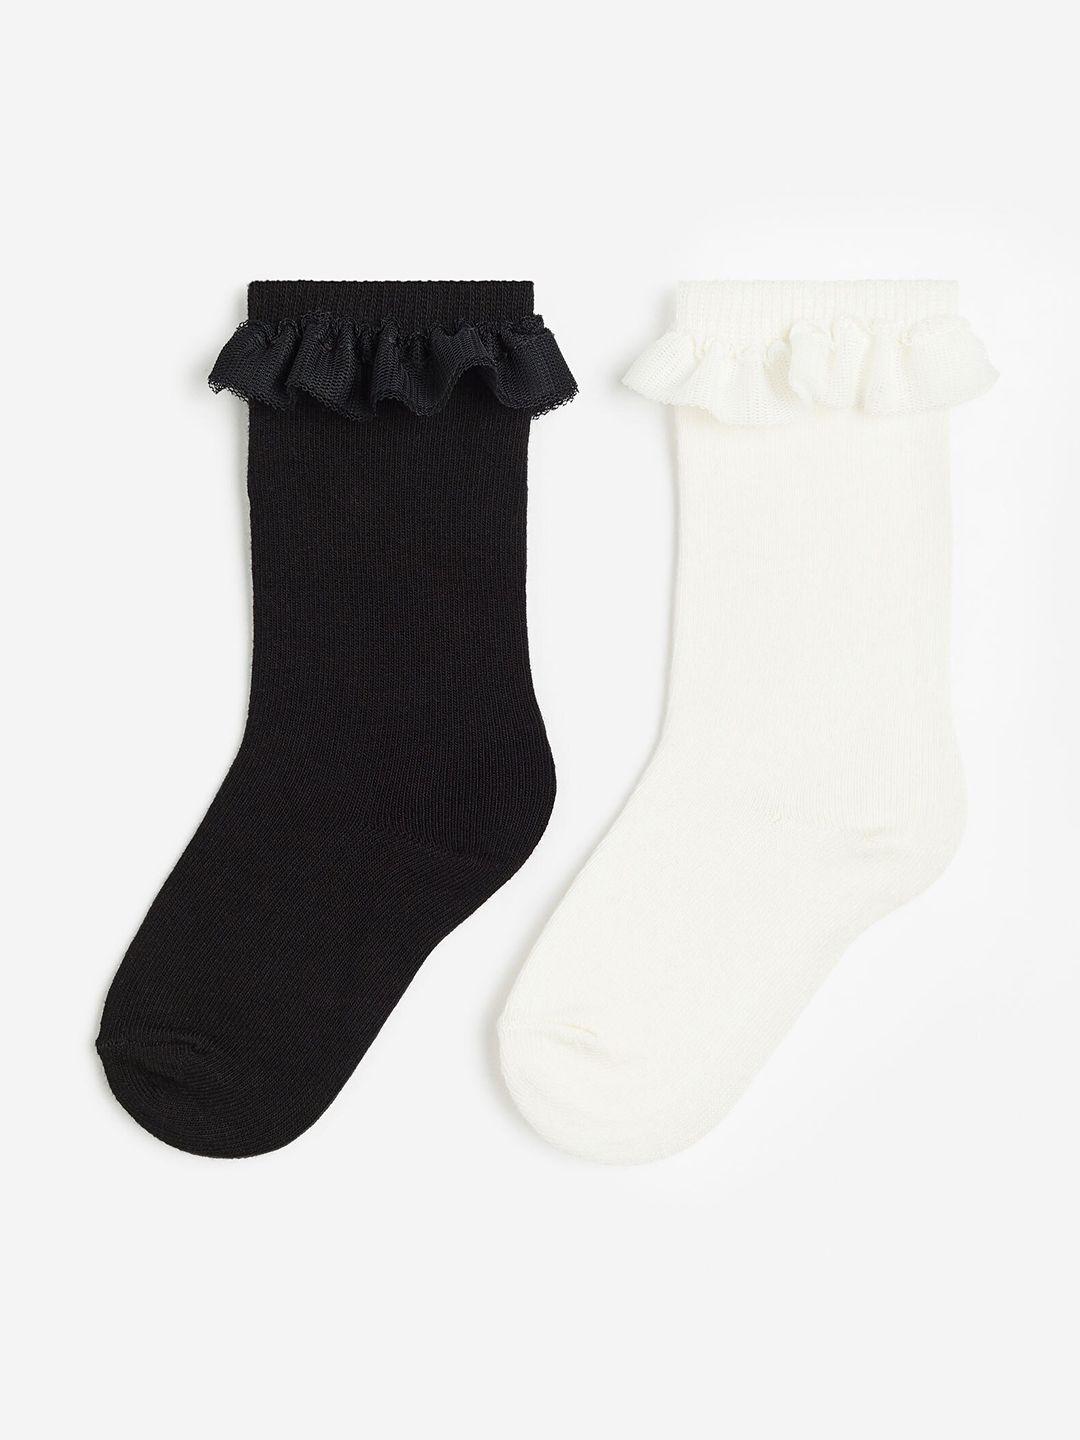 h&m boys 2-pack frill-trimmed knee socks